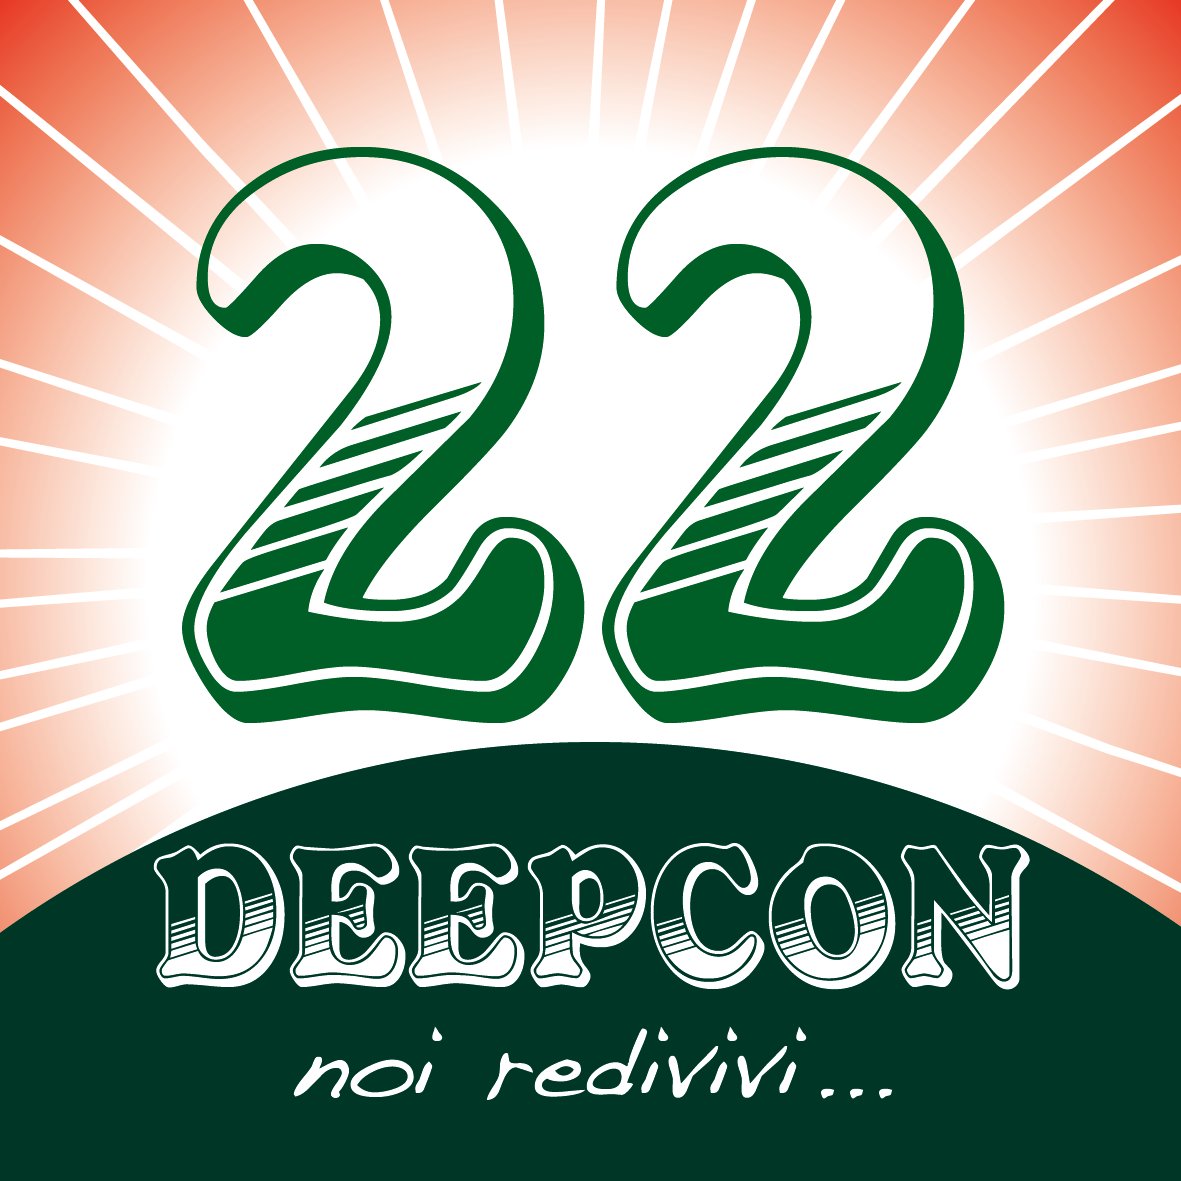 DeepCon 2022: dal 24 al 27 marzo!